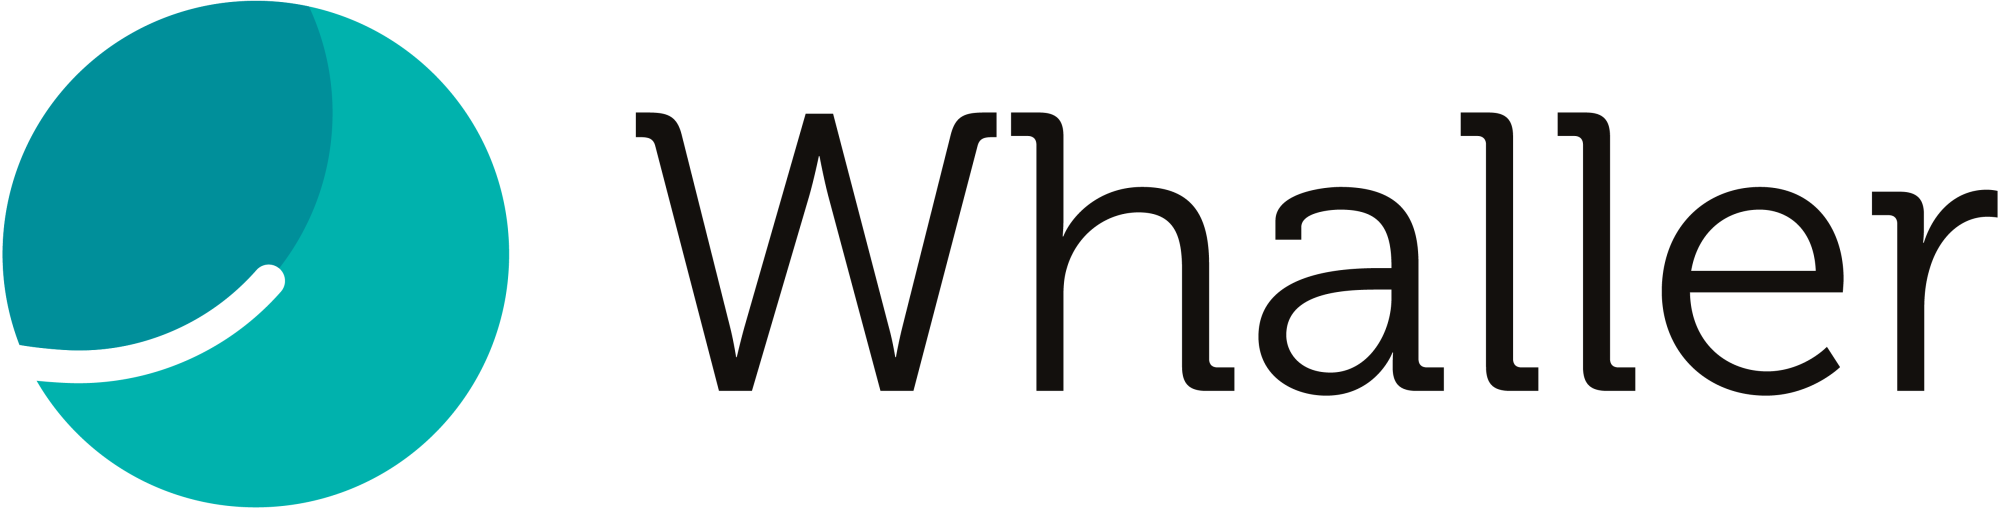 WHALLER_logo